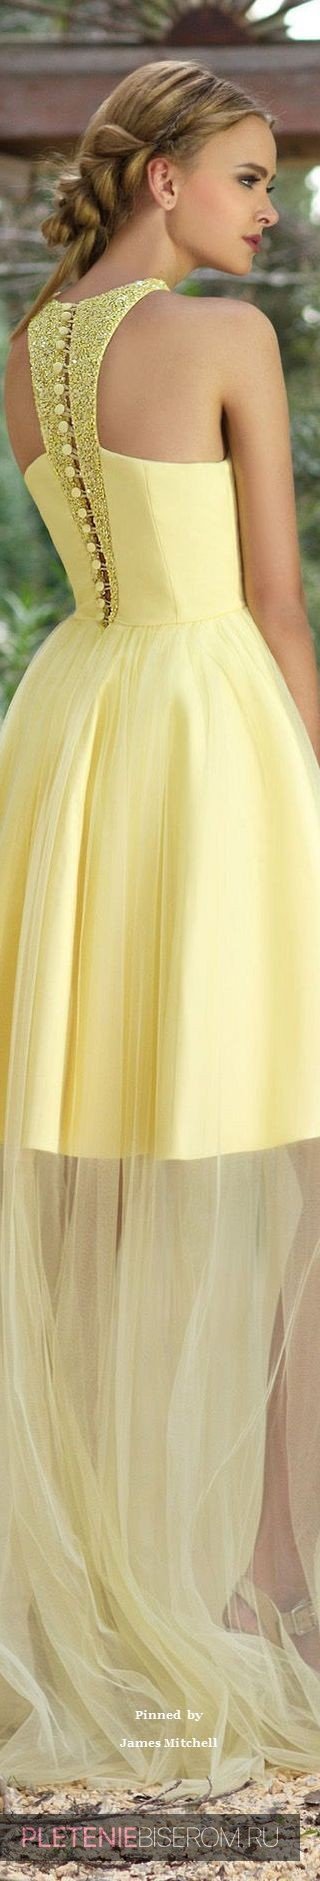 Желтое платье с бисерными вставками